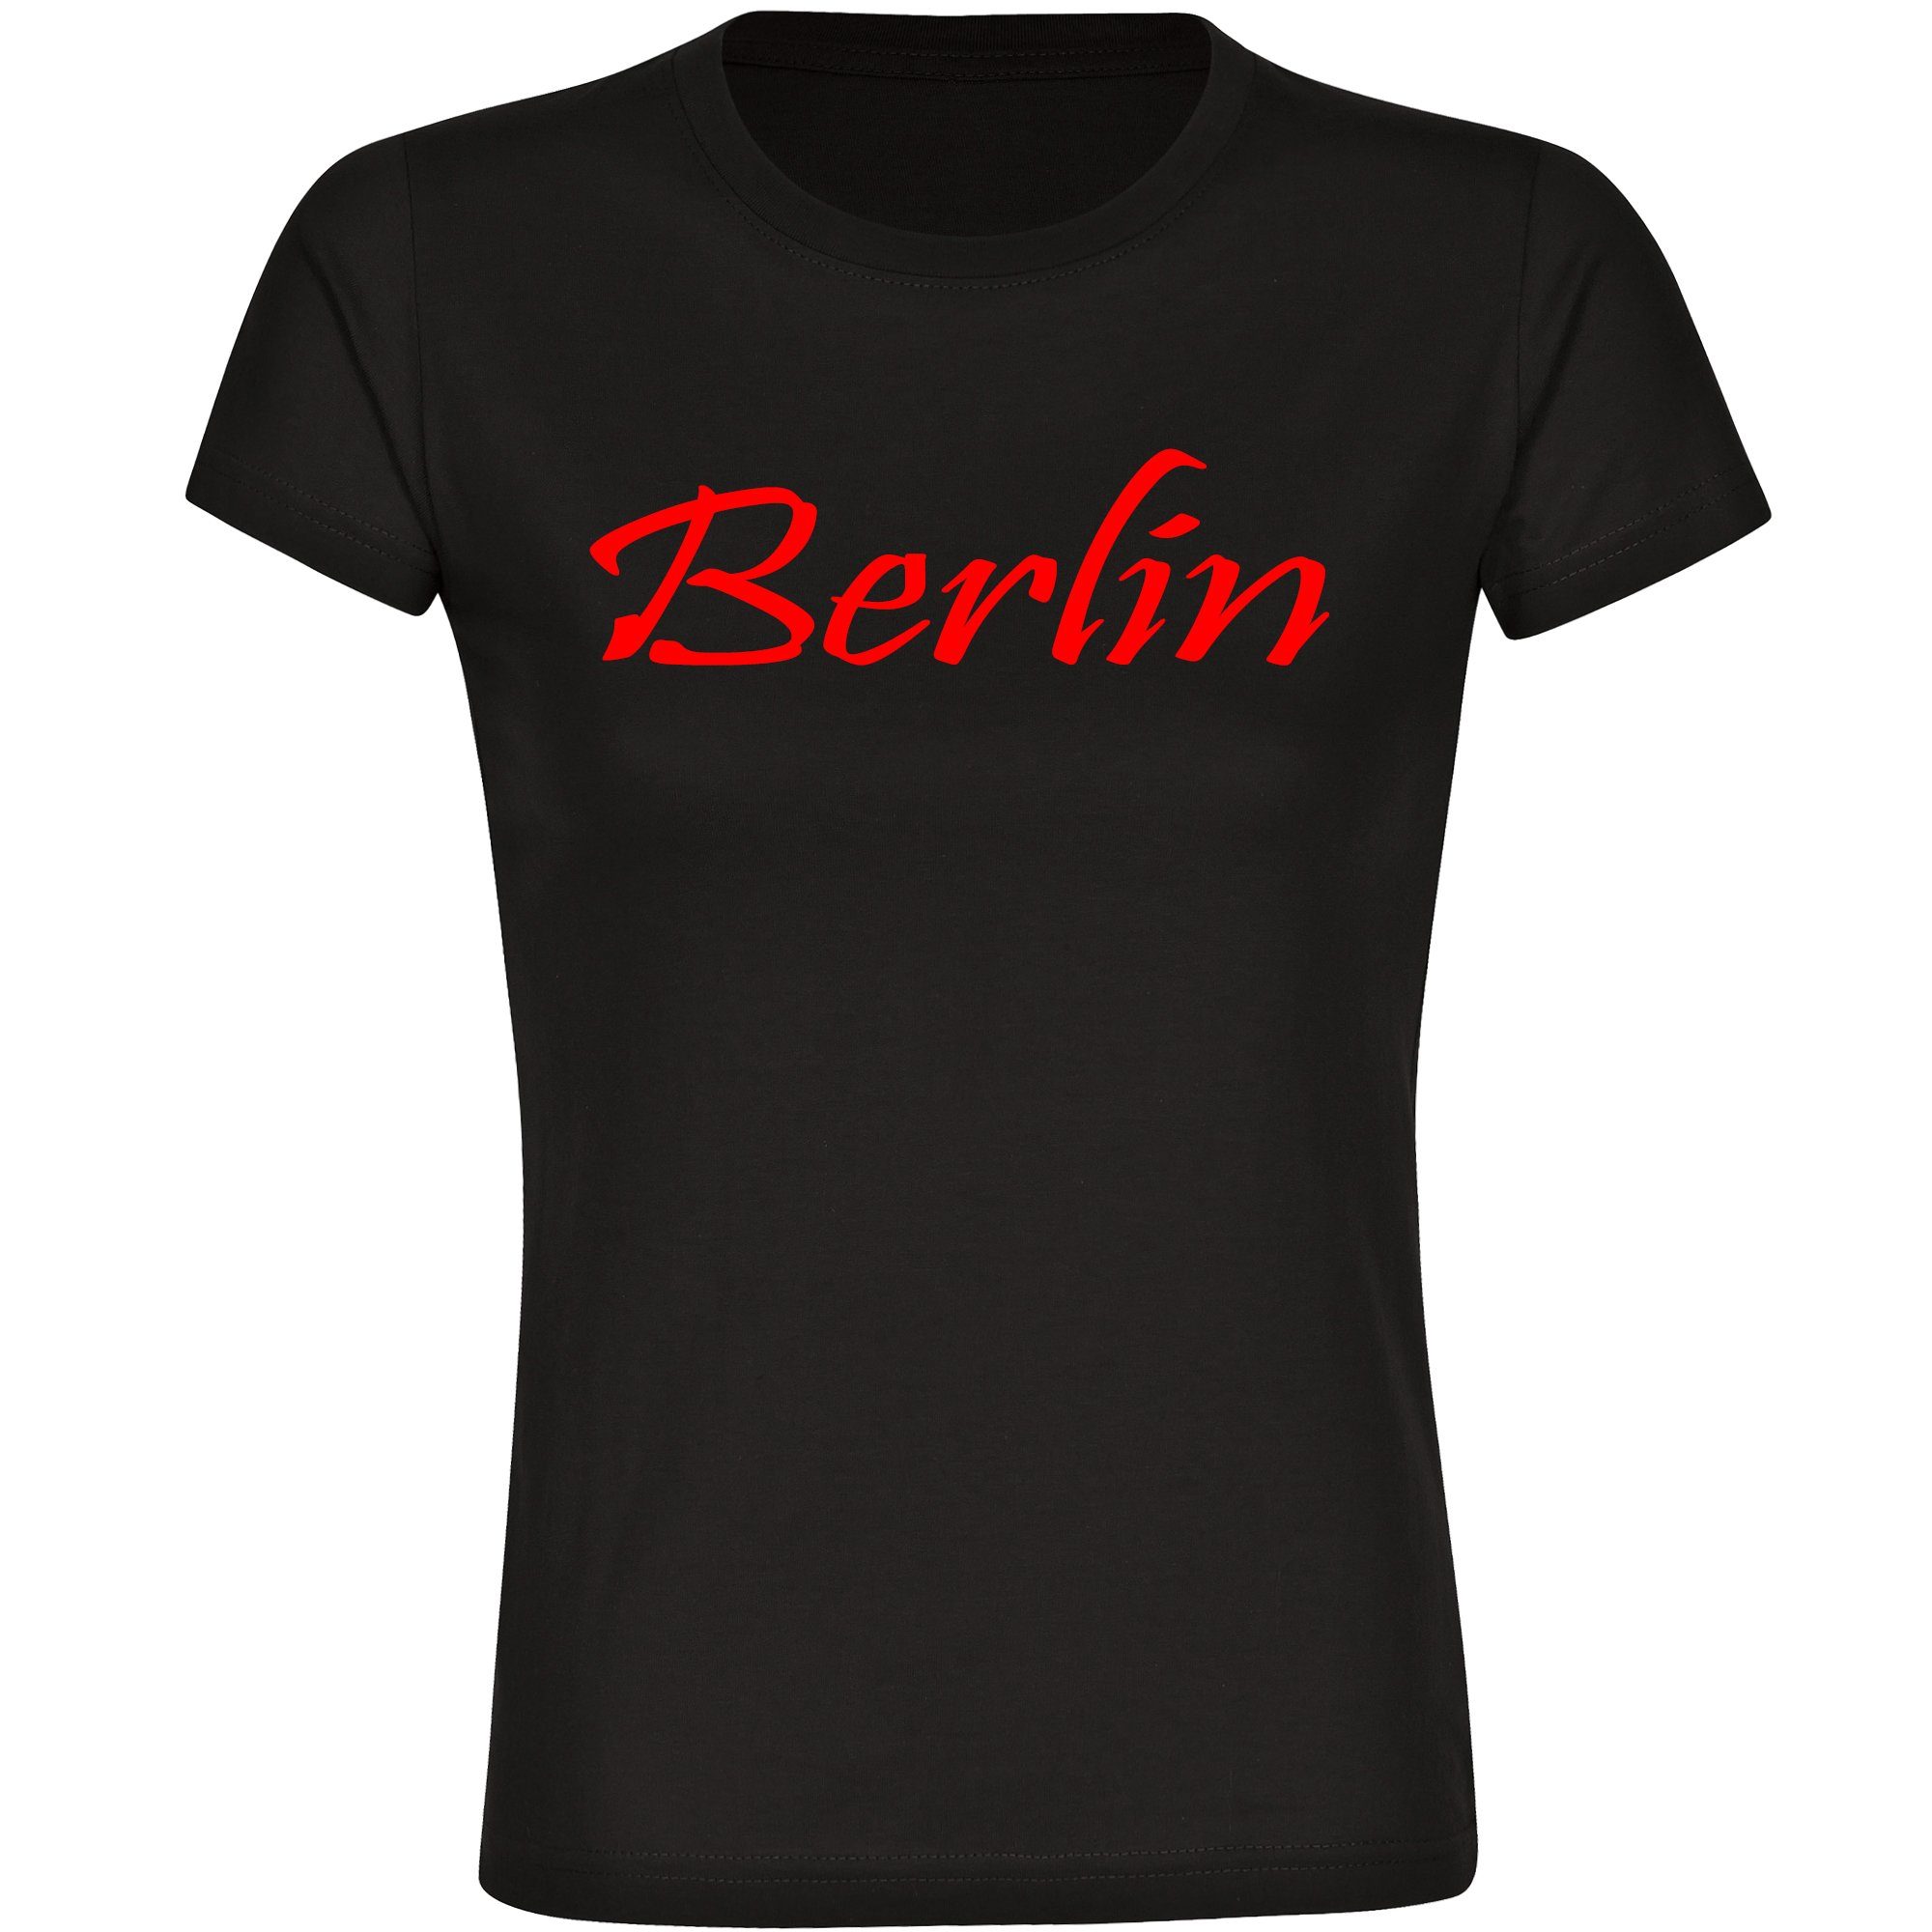 multifanshop T-Shirt Damen Berlin rot - Schriftzug - Frauen